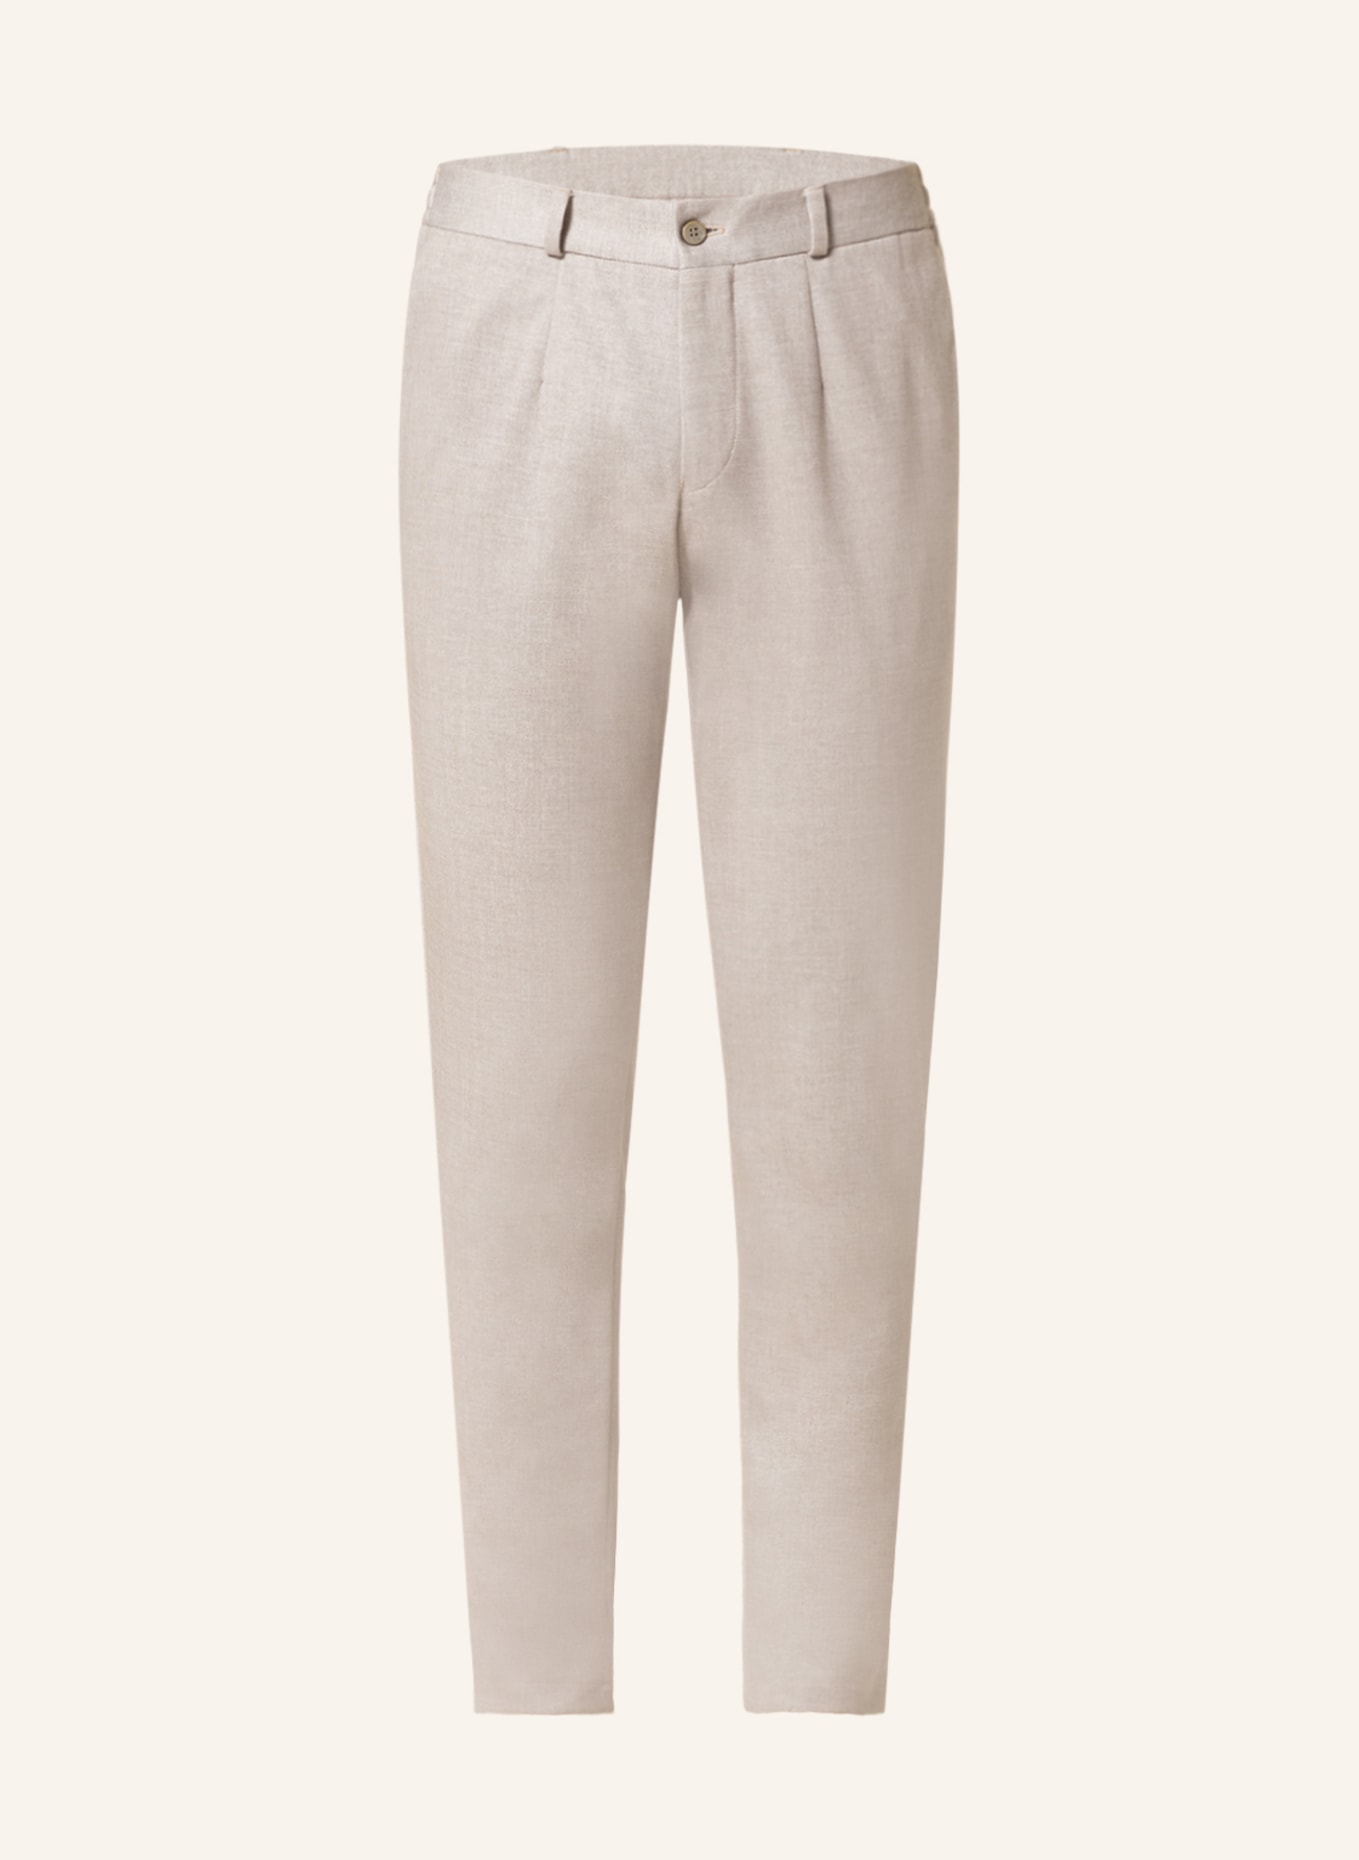 PAUL Anzughose Extra Slim Fit, Farbe: BEIGE (Bild 1)